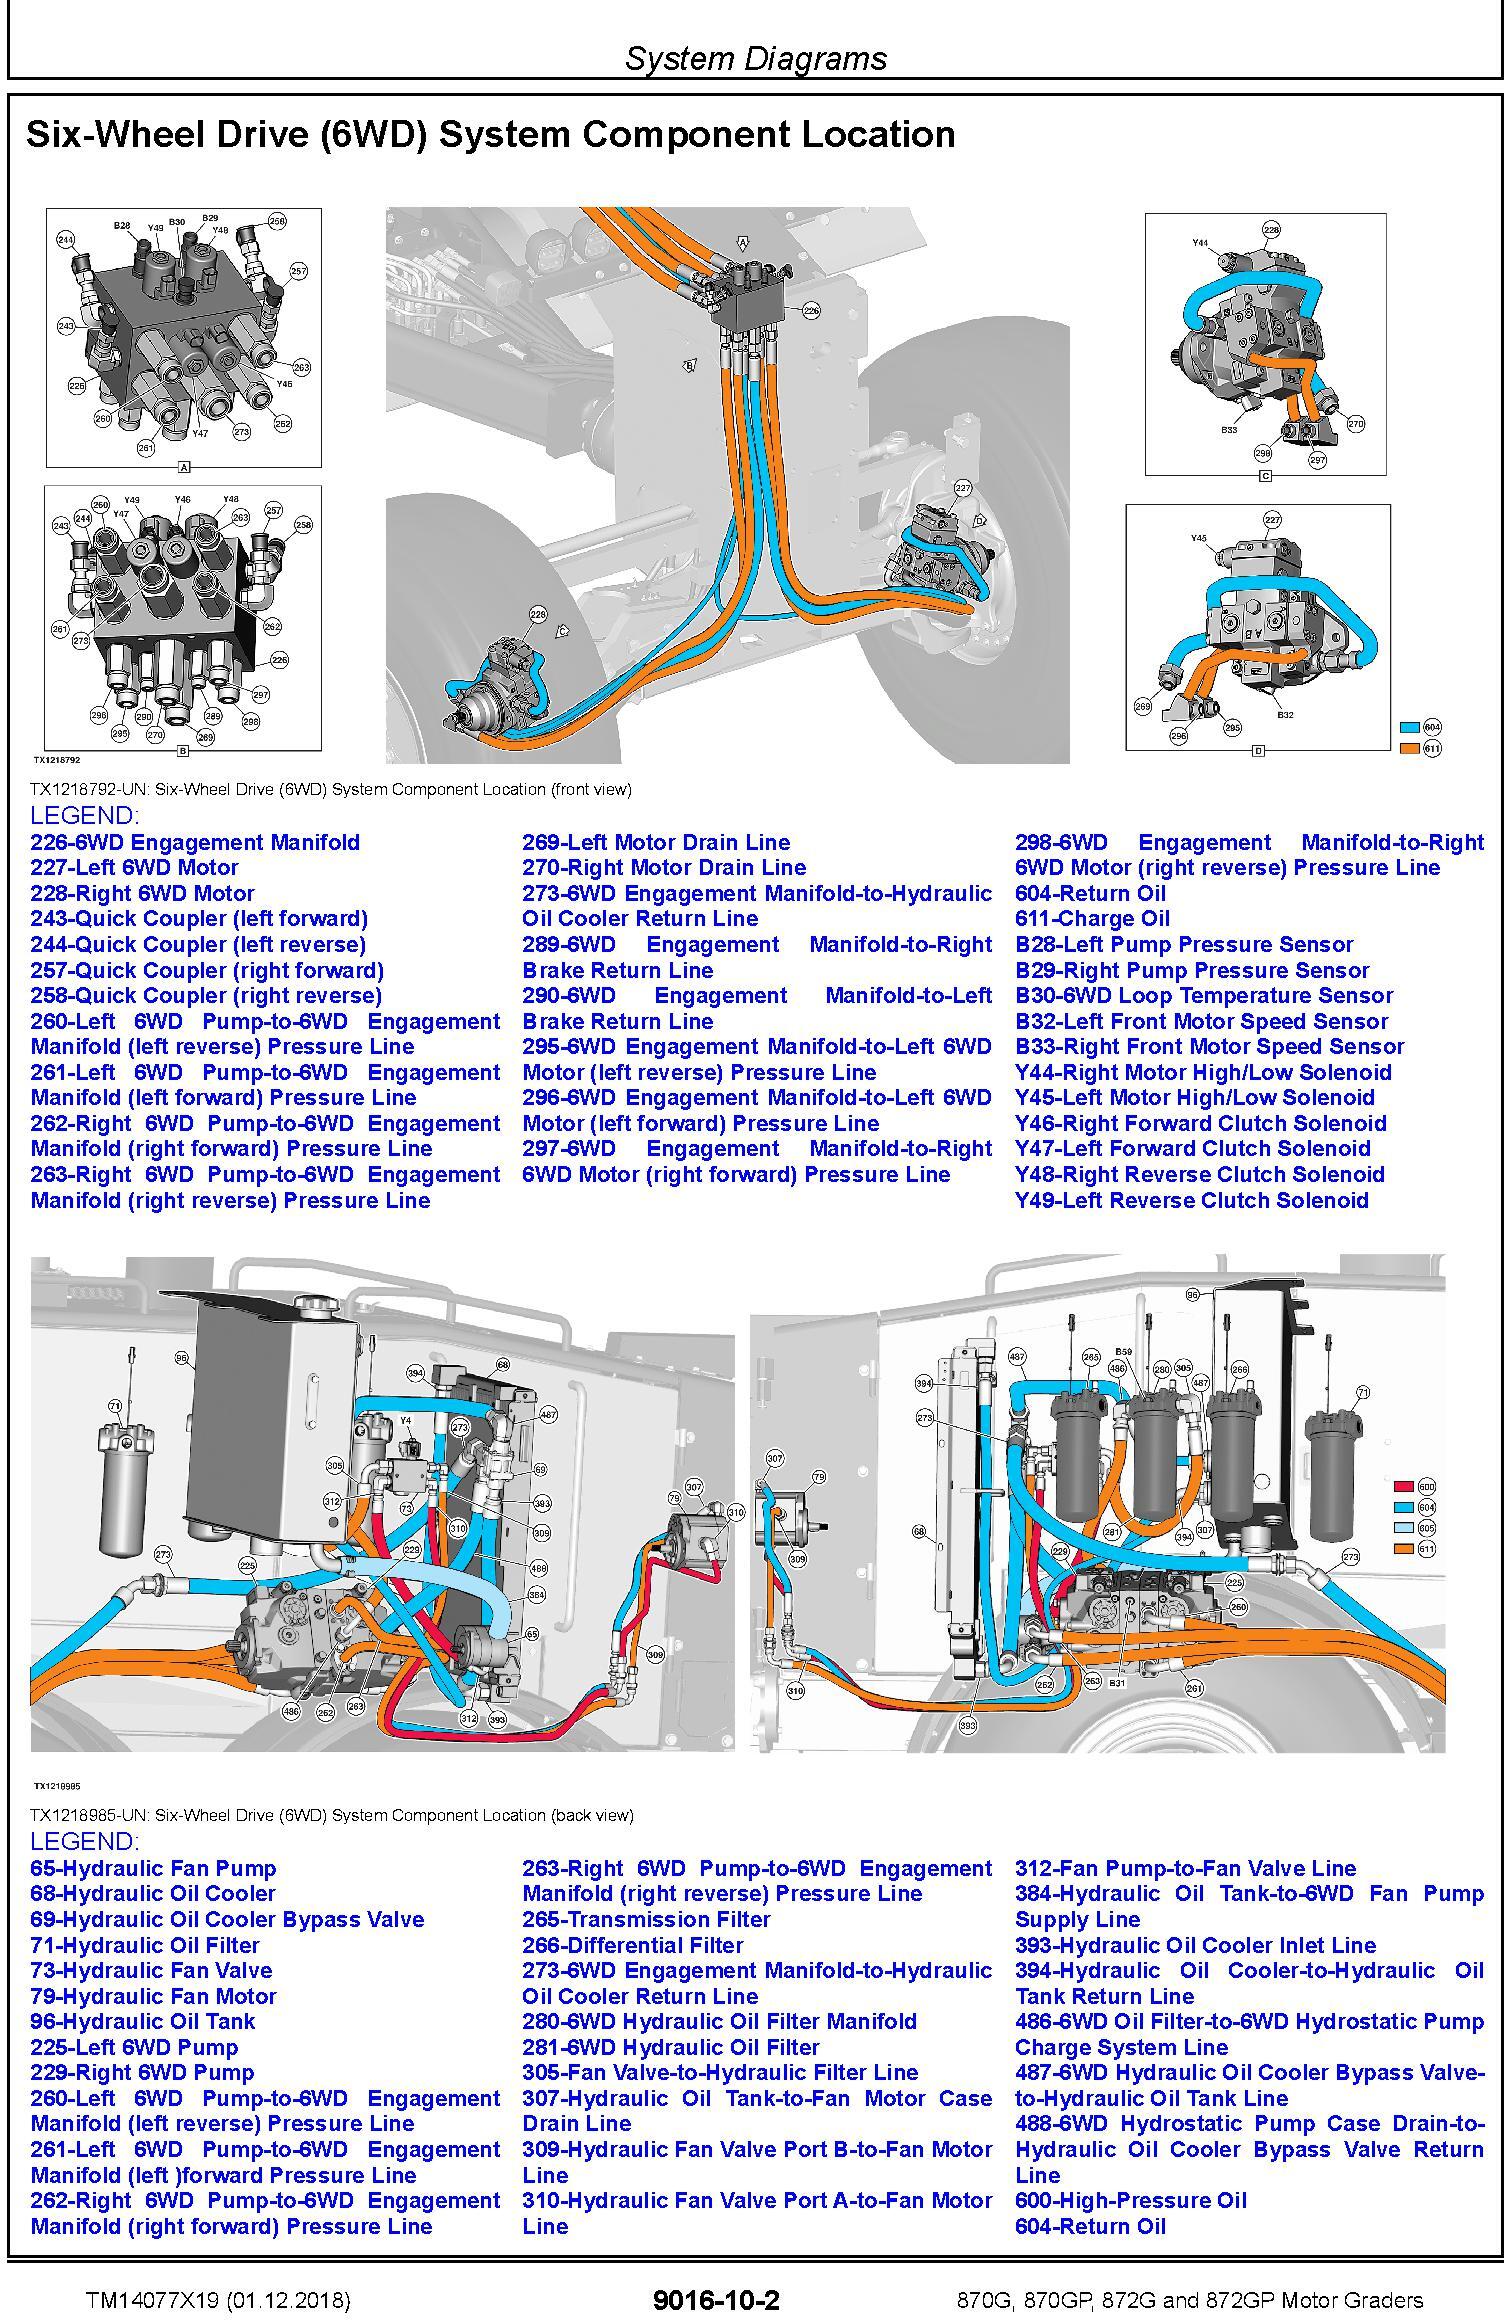 John Deere 870G, 870GP, 872G, 872GP (SN.C678818-680877) Motor Graders Diagnostic Manual (TM14077X19) - 2